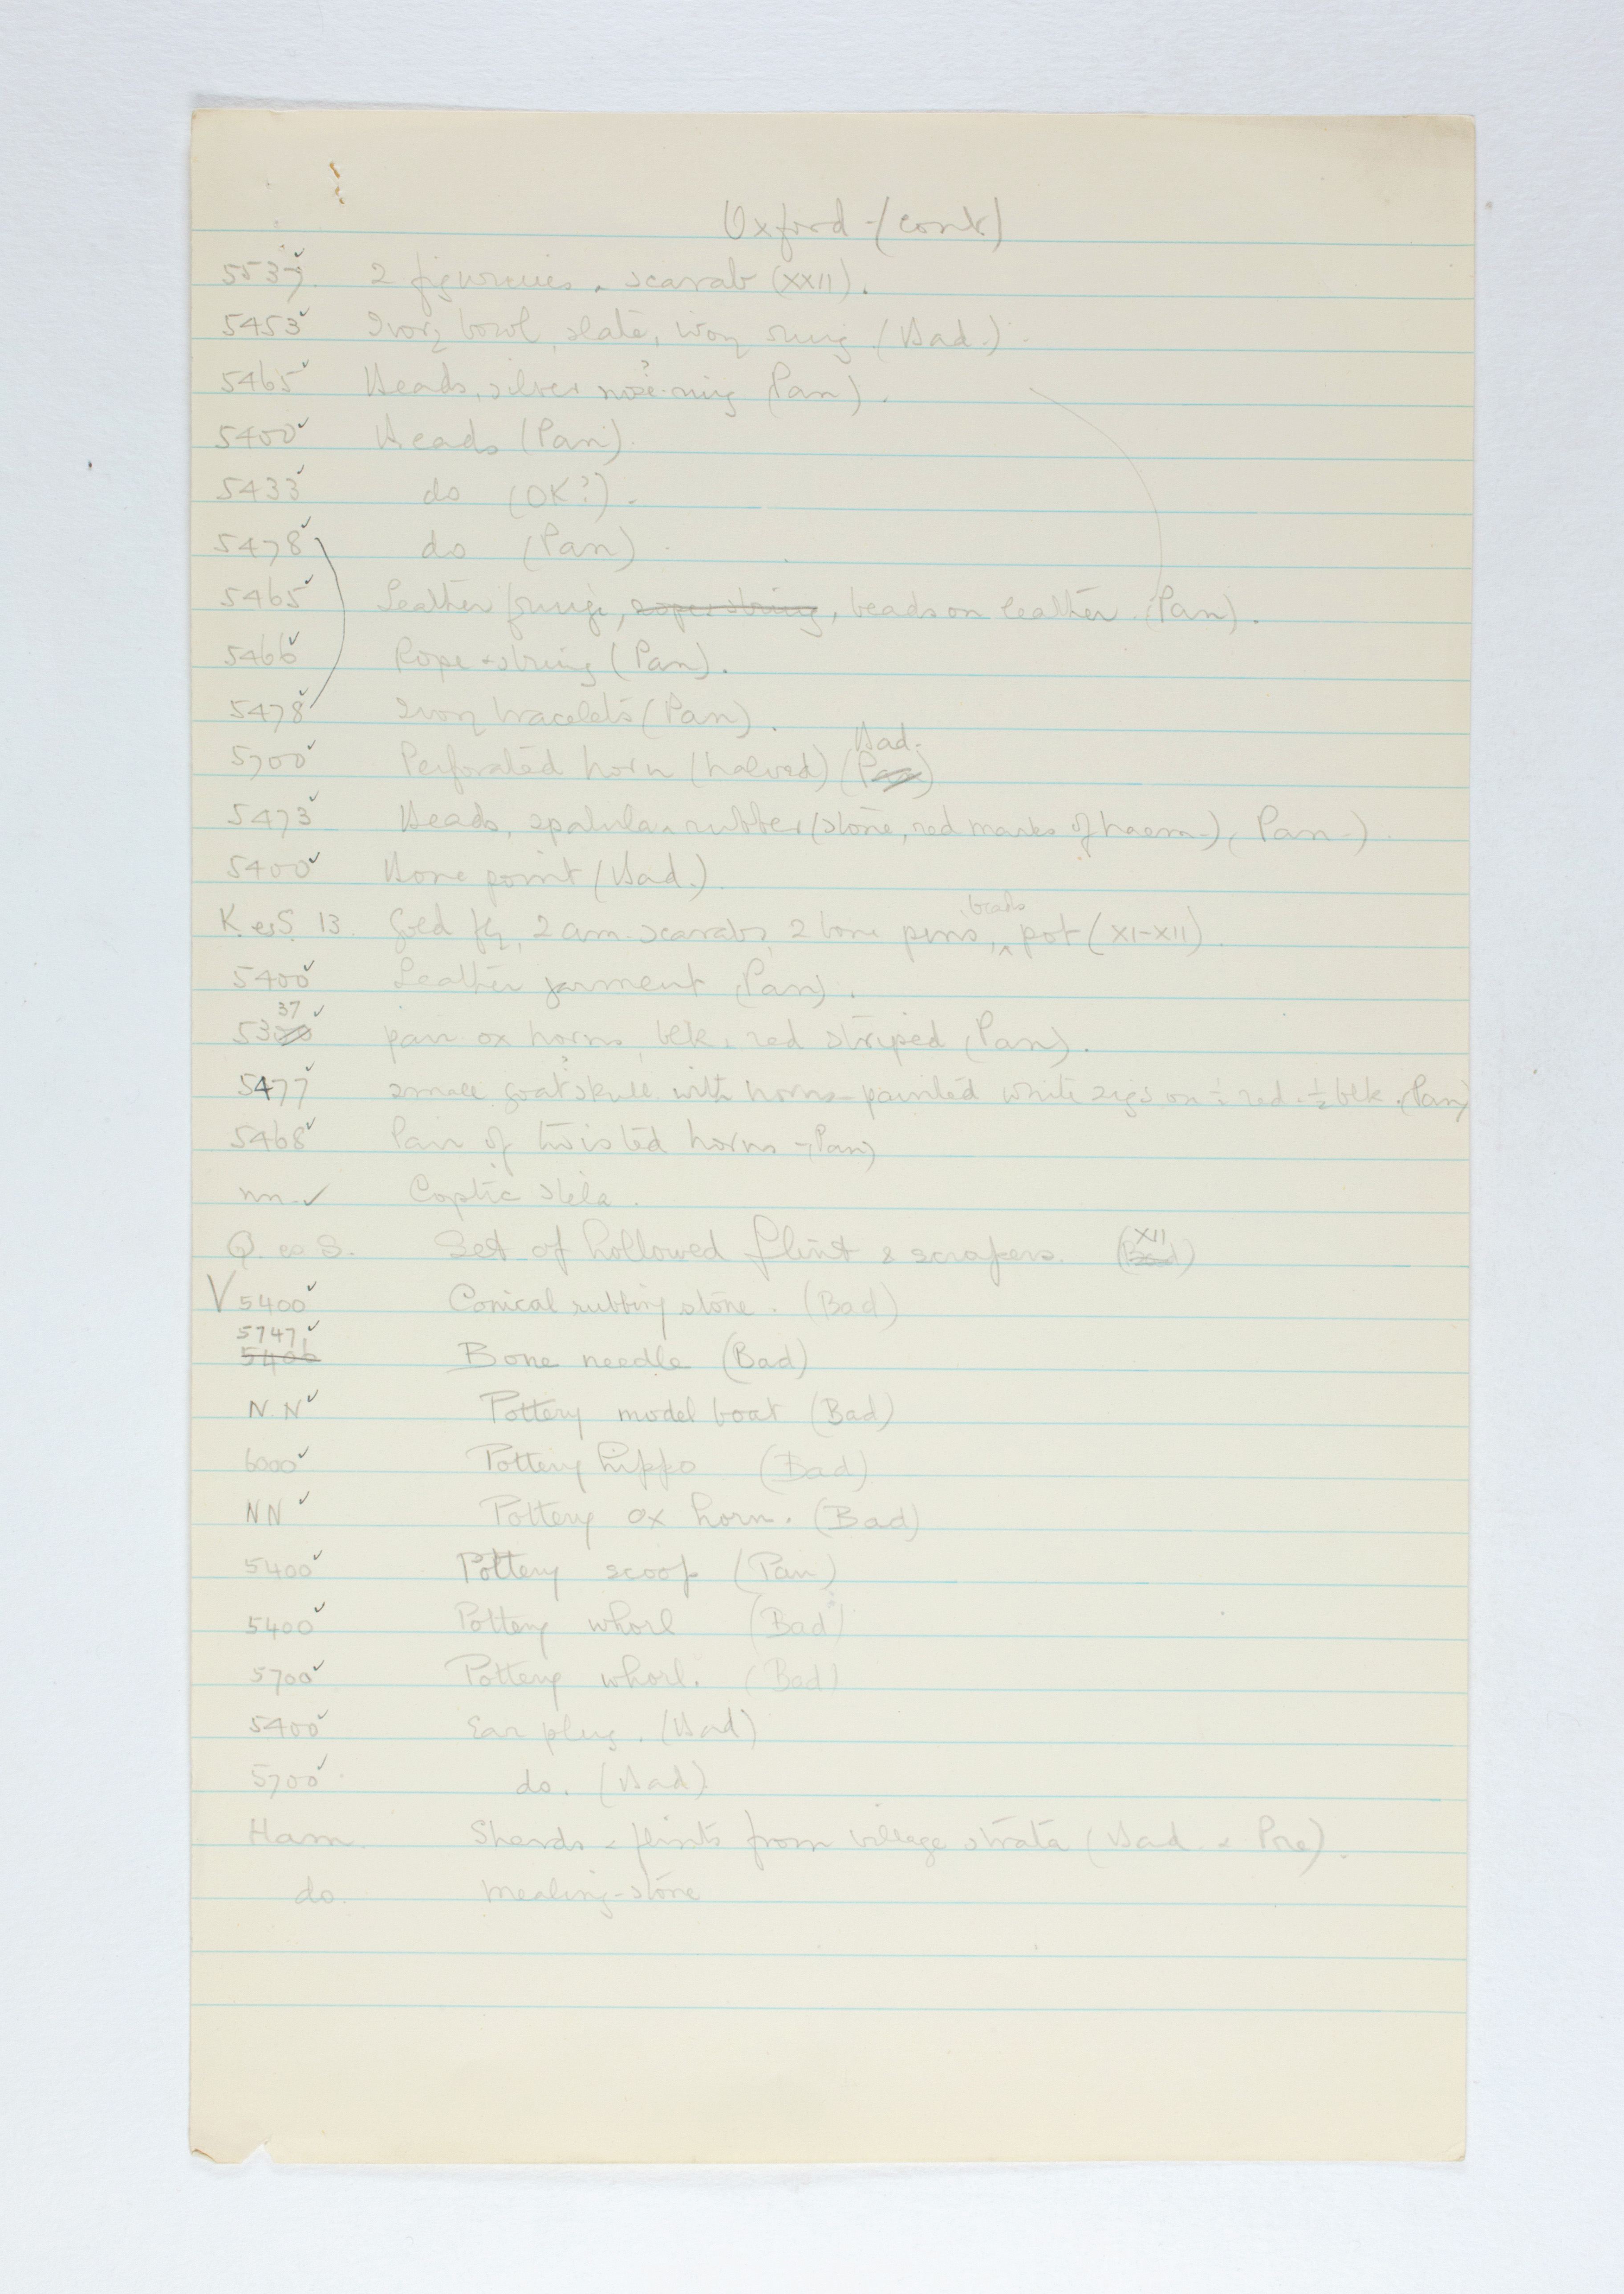 1924-25 Badari, Faiyum Individual institution list PMA/WFP1/D/28/17.2